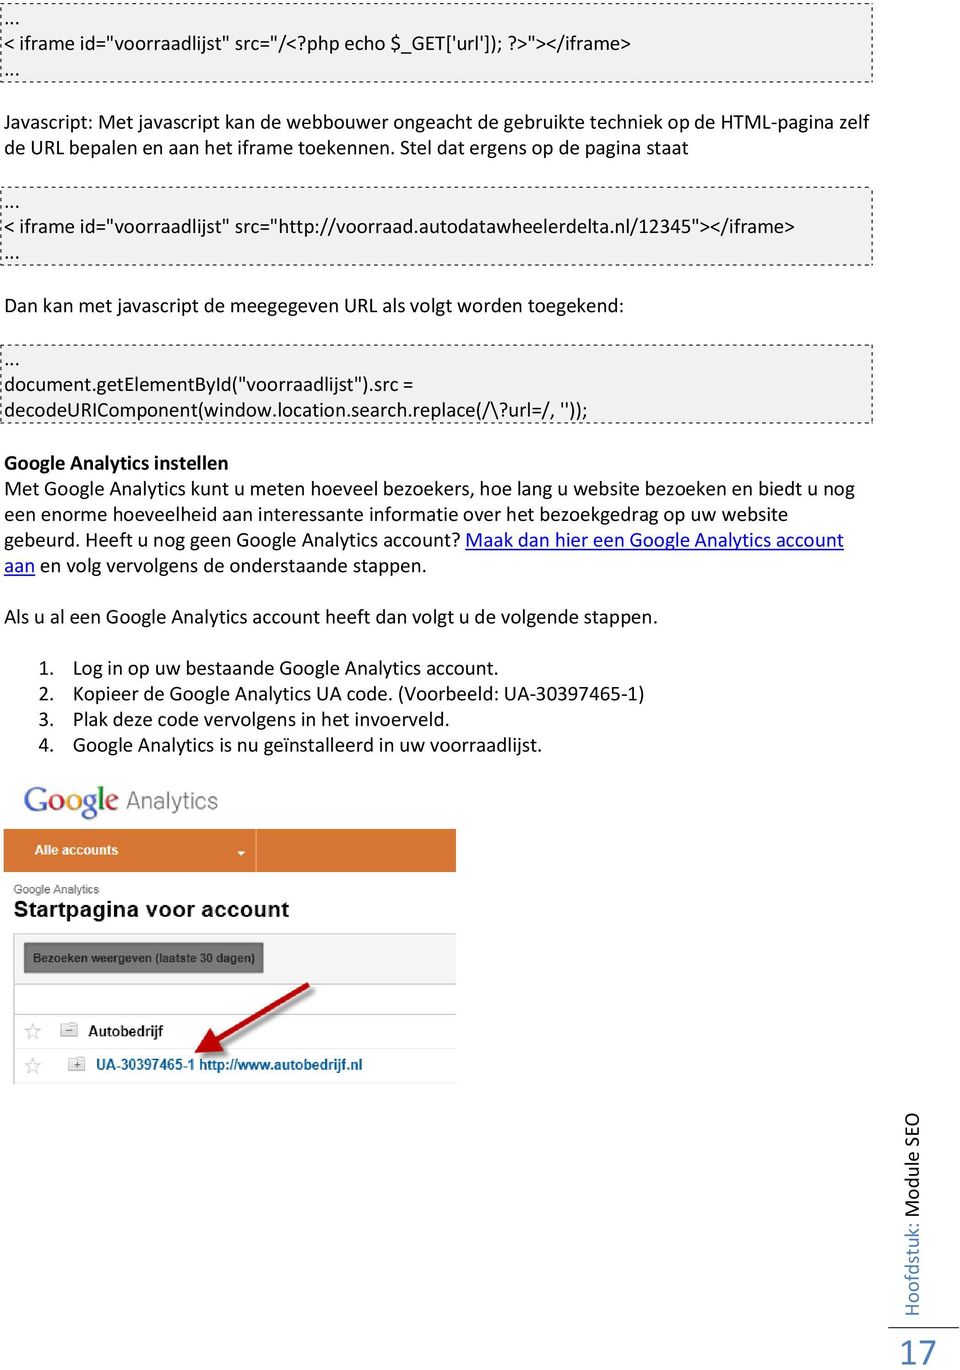 .. < iframe id="voorraadlijst" src="http://voorraad.autodatawheelerdelta.nl/12345"></iframe>... Dan kan met javascript de meegegeven URL als volgt worden toegekend:... document.